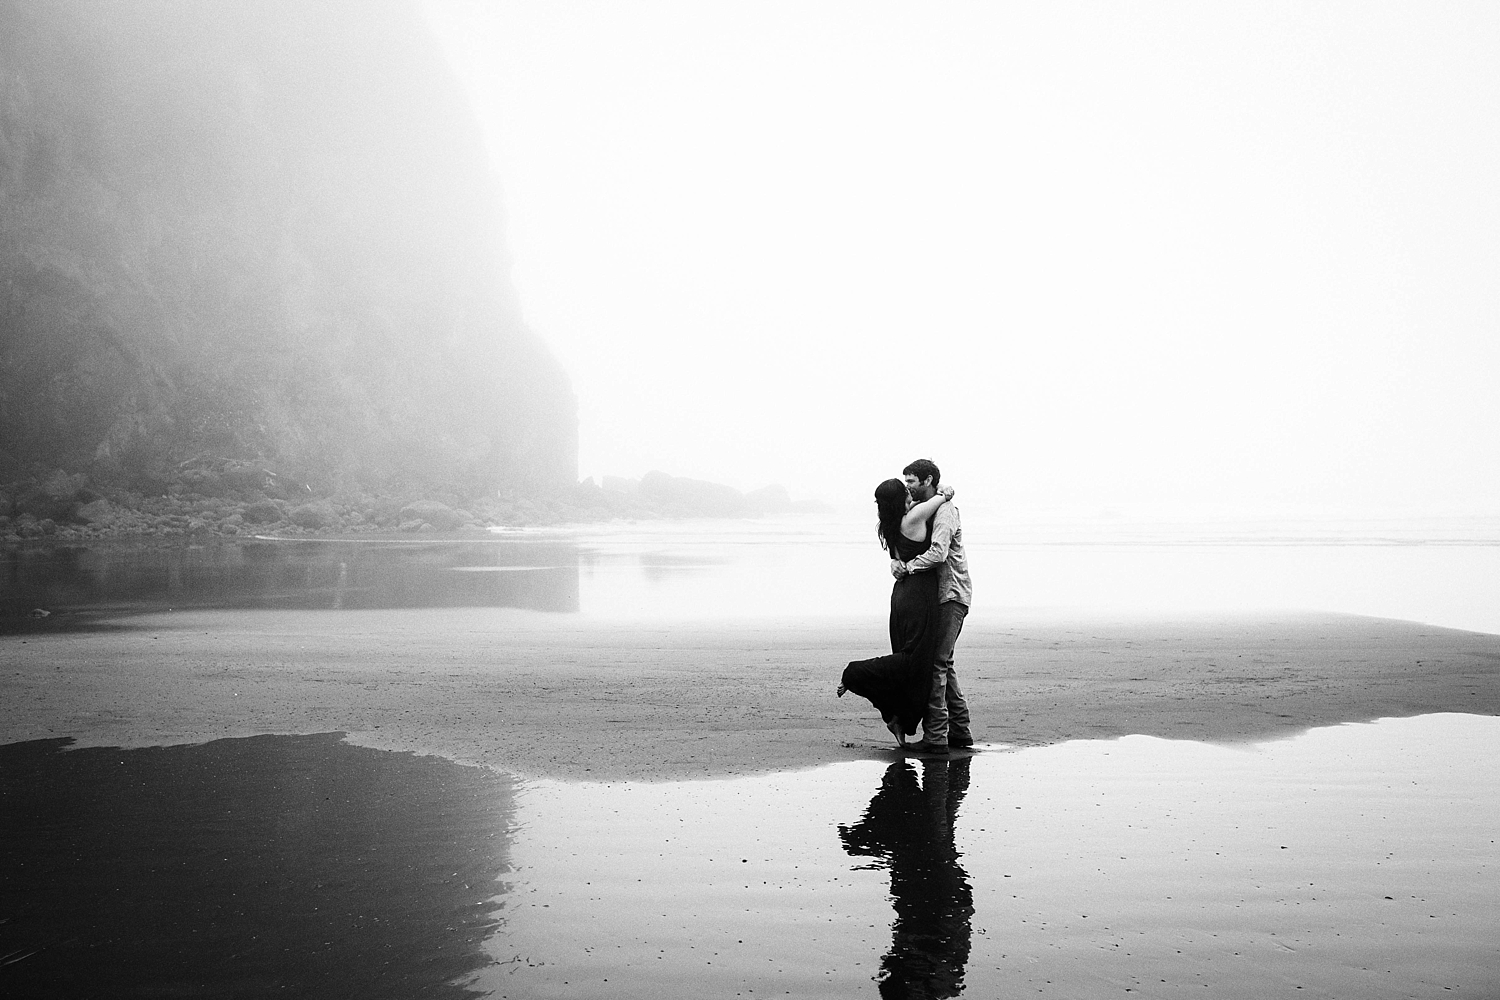 Engagement session on the Washington Coast | Meg Newton Photography